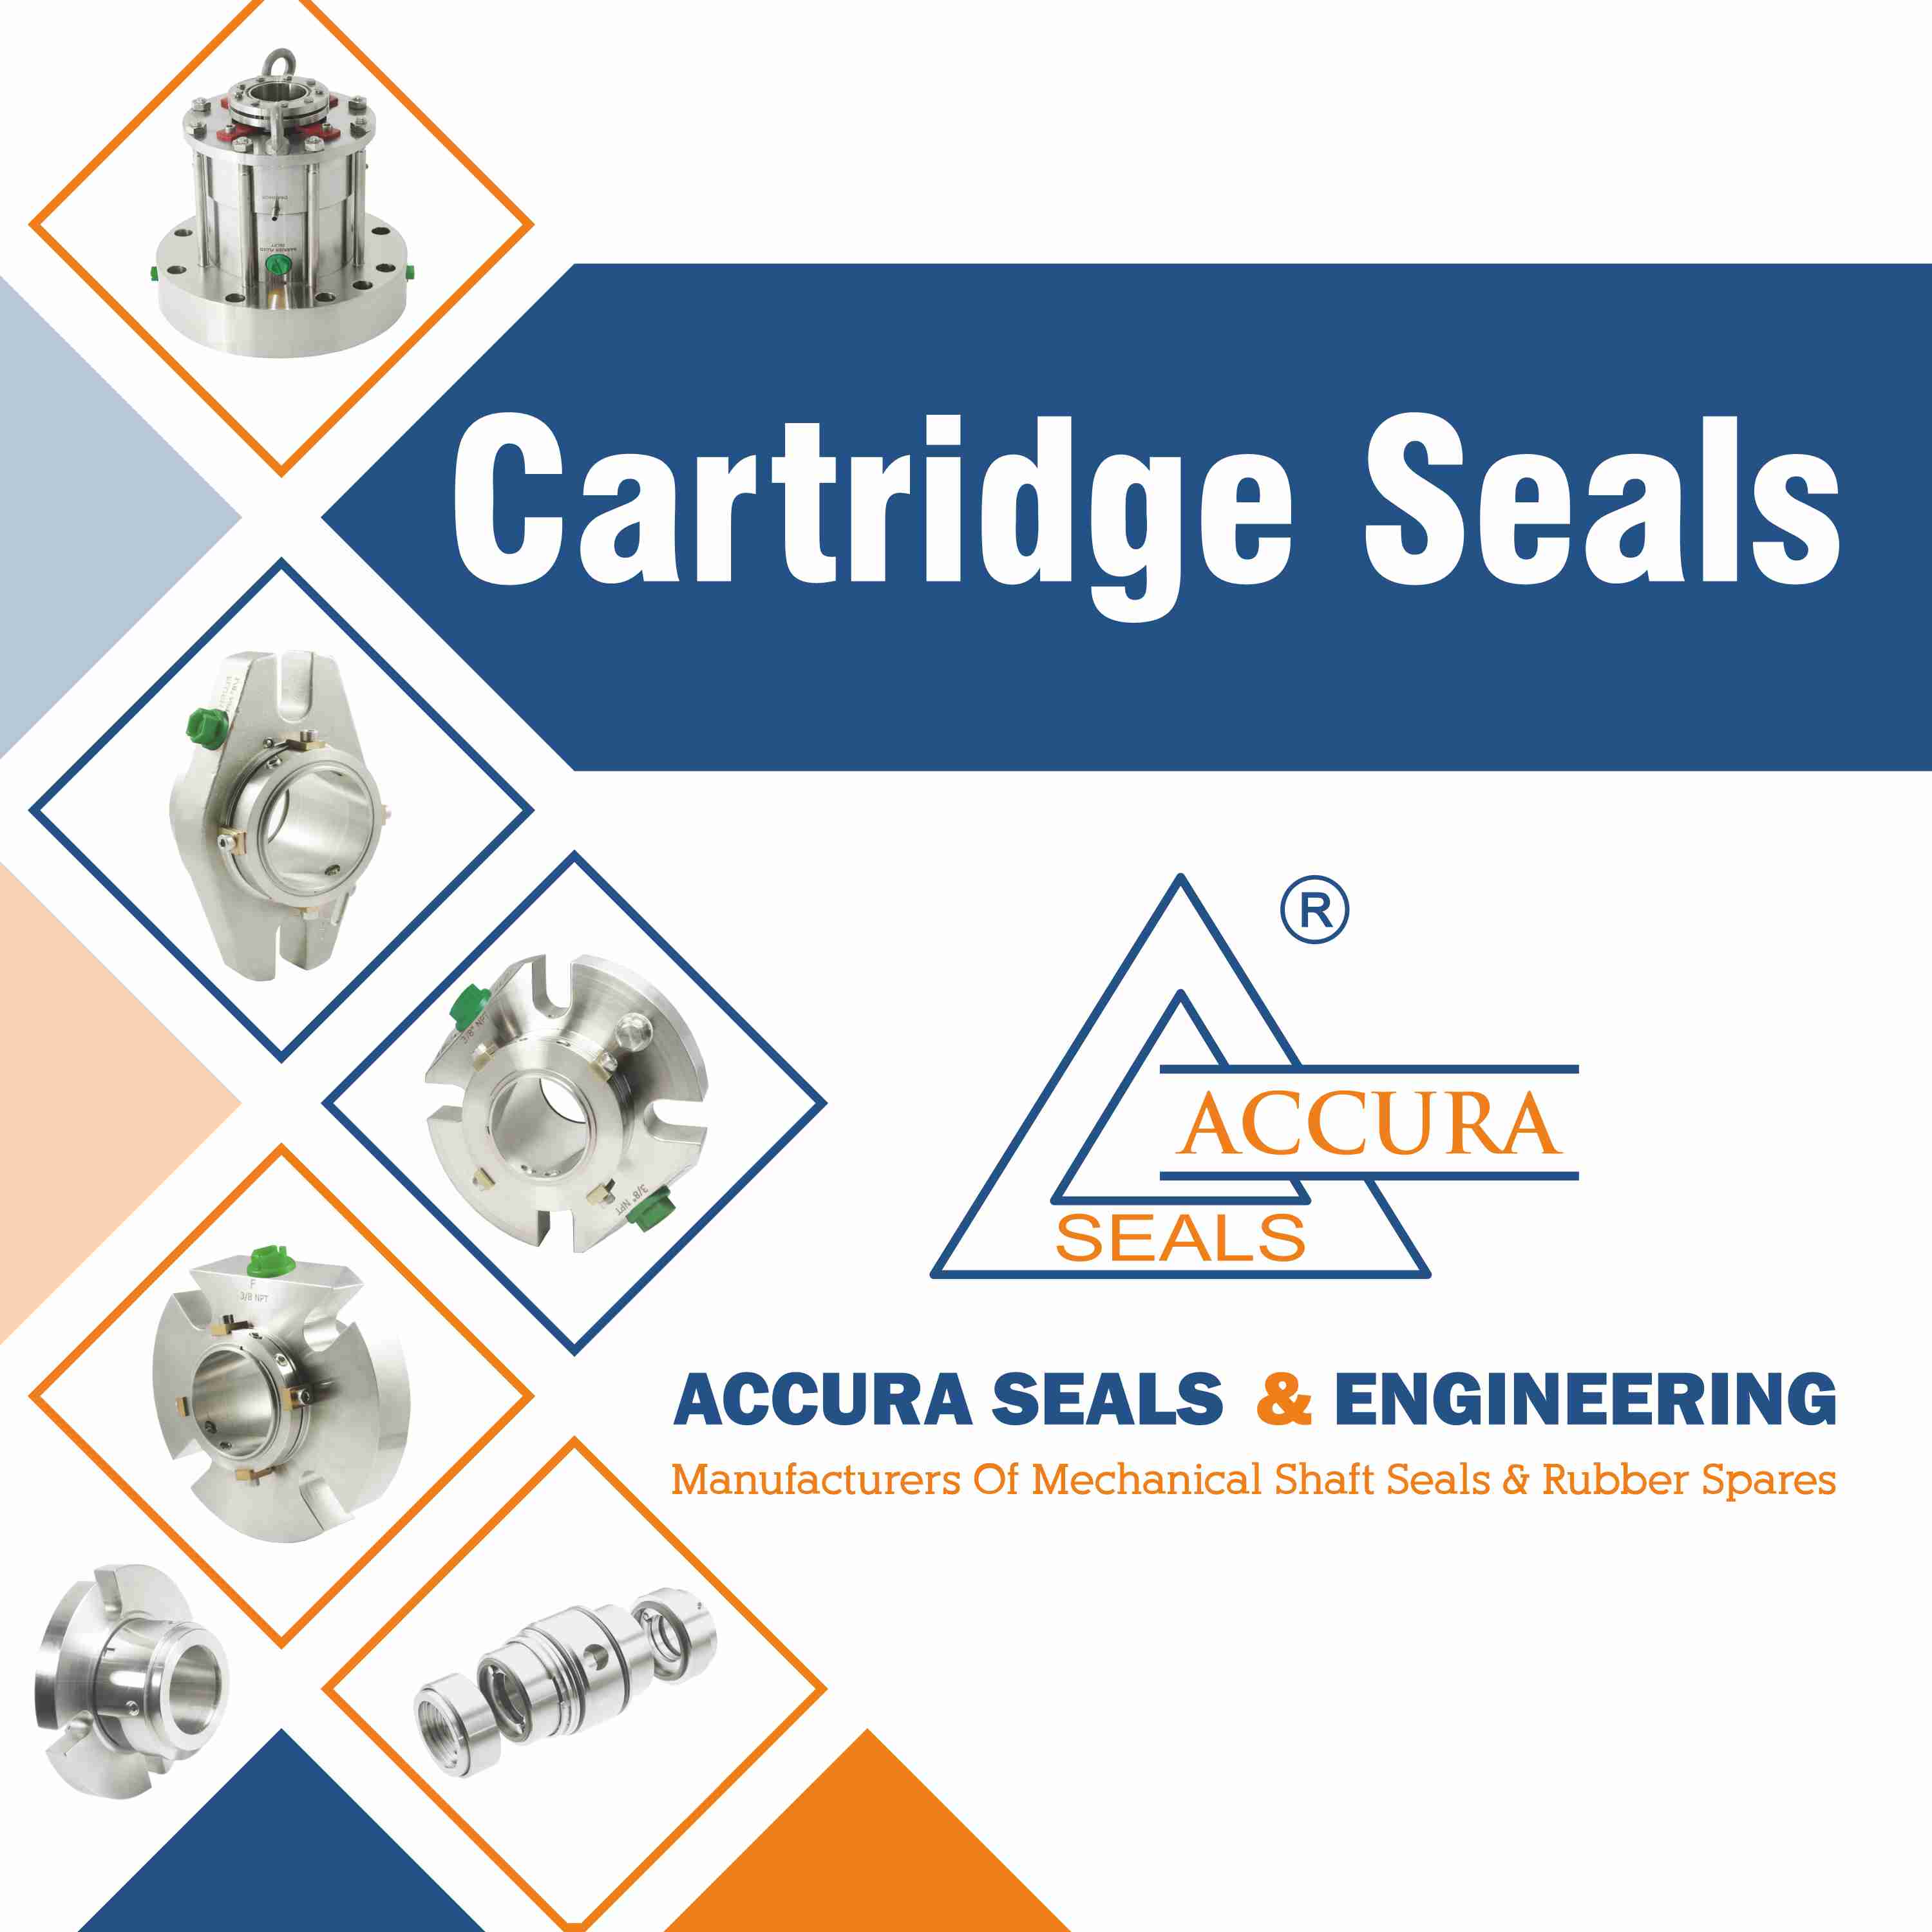 Accura Seals & Engineering - Cartridge Seals